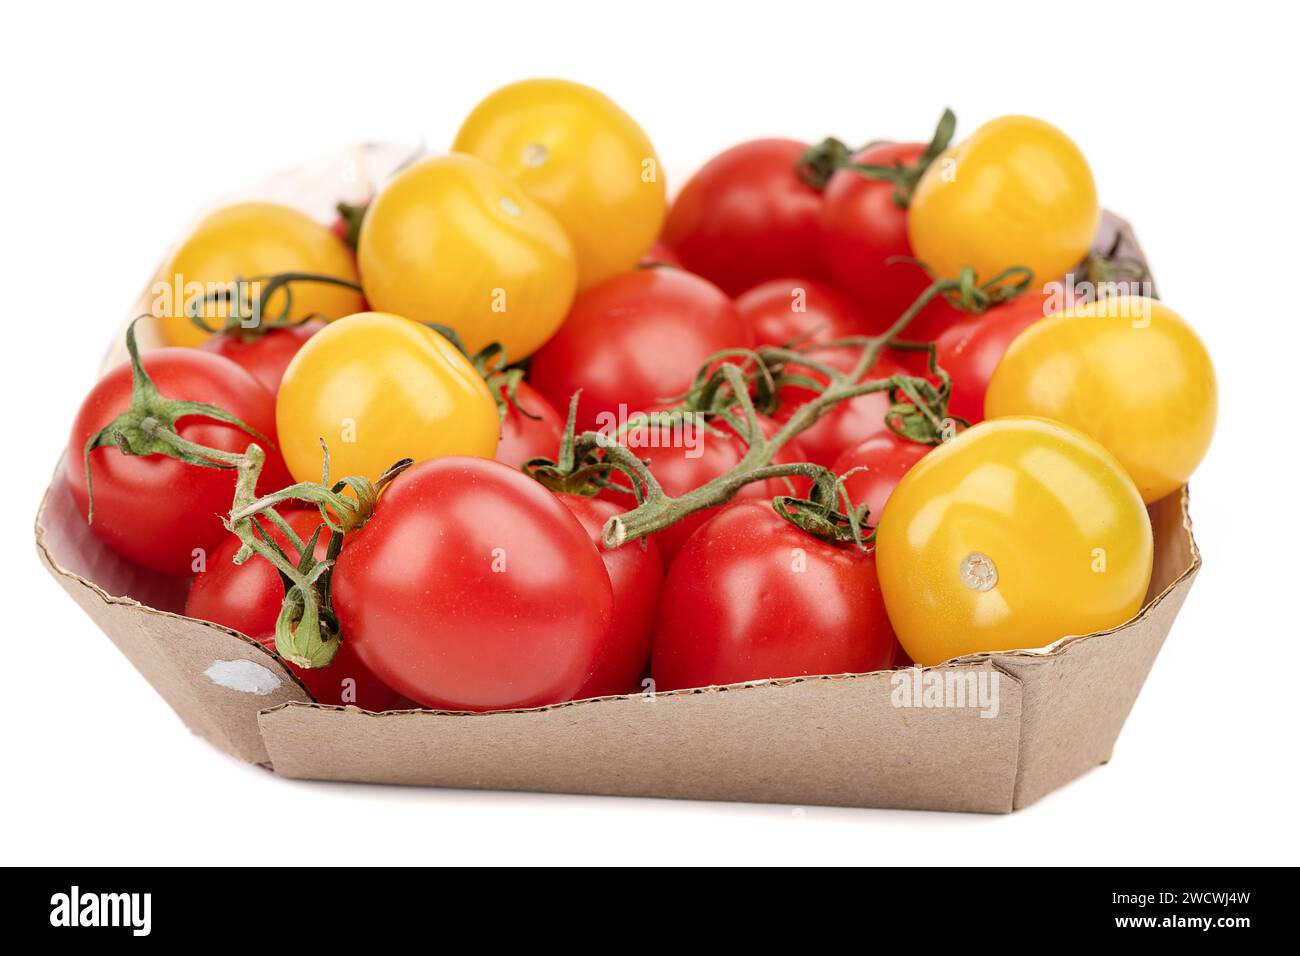 Reife rote und gelbe Tomaten in einem Karton auf weißem Hintergrund. Fokus auf den Vordergrund, Hintergrund unscharf. Kopierbereich. Stockfoto